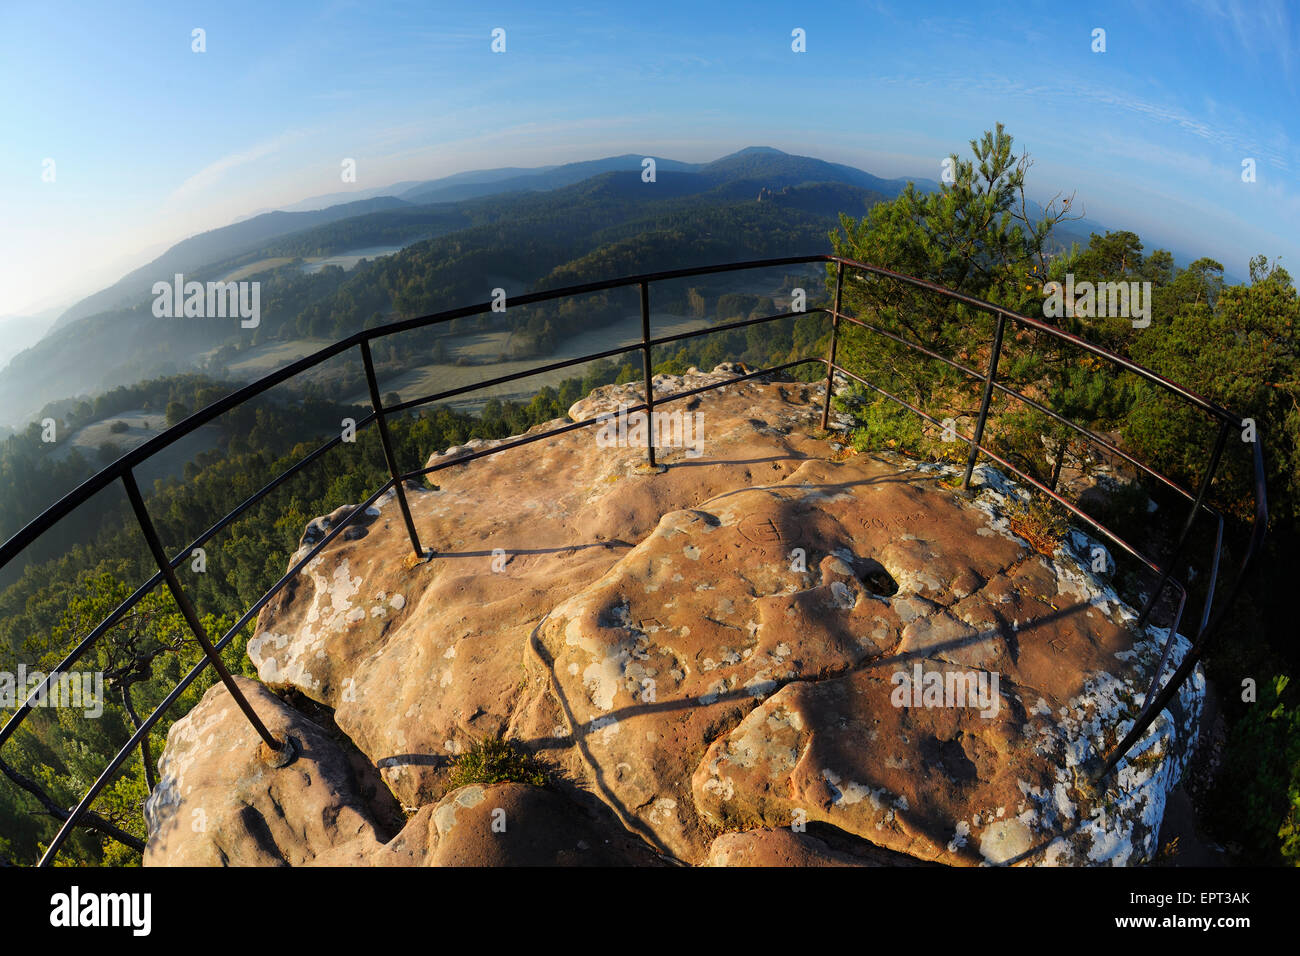 Observation Point on Mountain, Hochstein, Dahn, Dahner Felsenland, Pfalzerwald, Rhineland-Palatinate, Germany Stock Photo